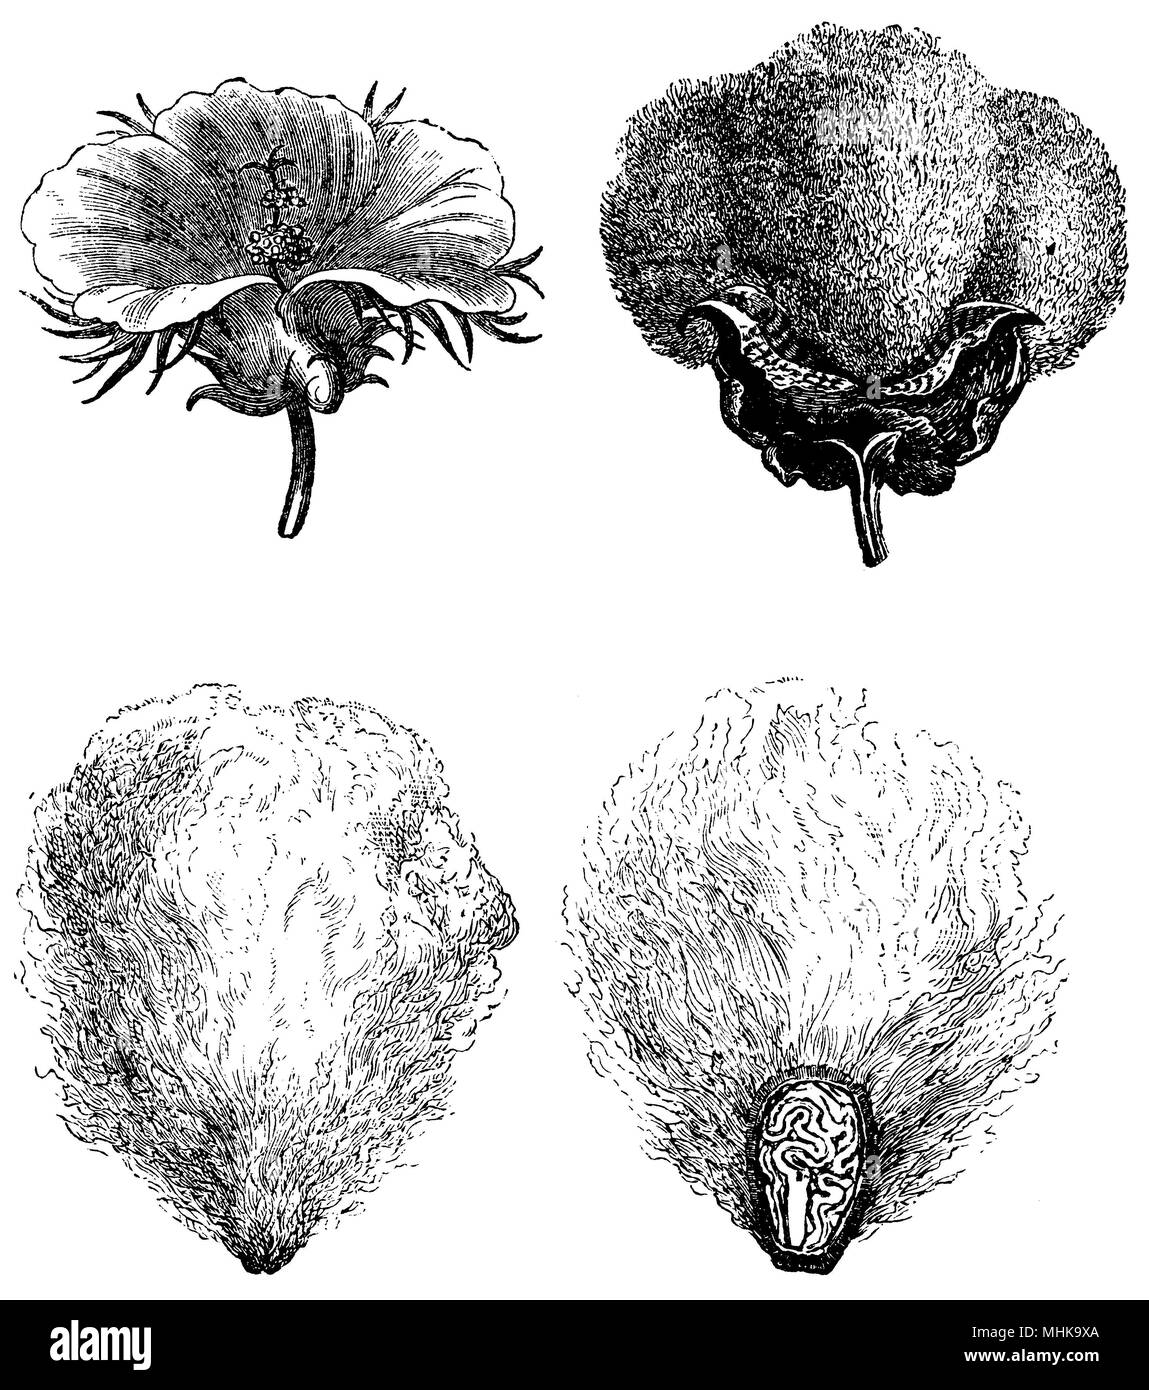 Fleur de coton (en haut à gauche), le coton Fruits (en haut à droite), du coton (en bas à gauche), du coton (en bas à droite) Banque D'Images